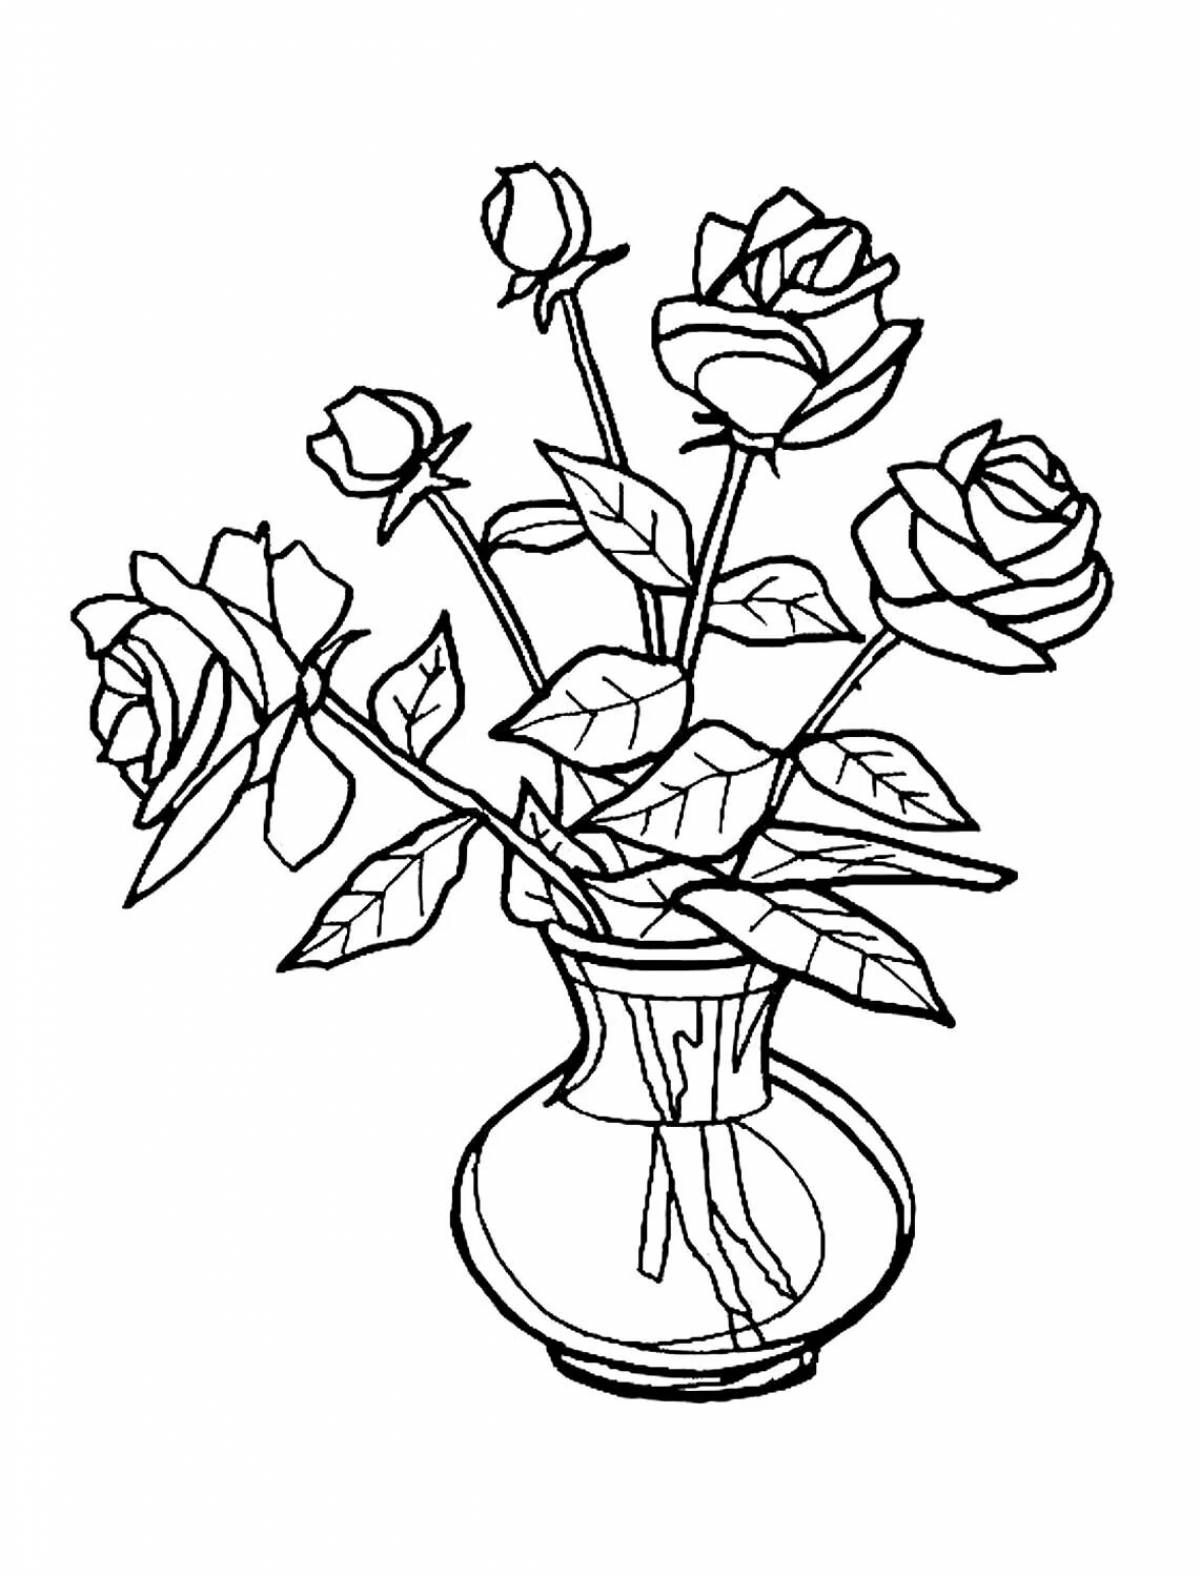 Rose flowers in vase #9